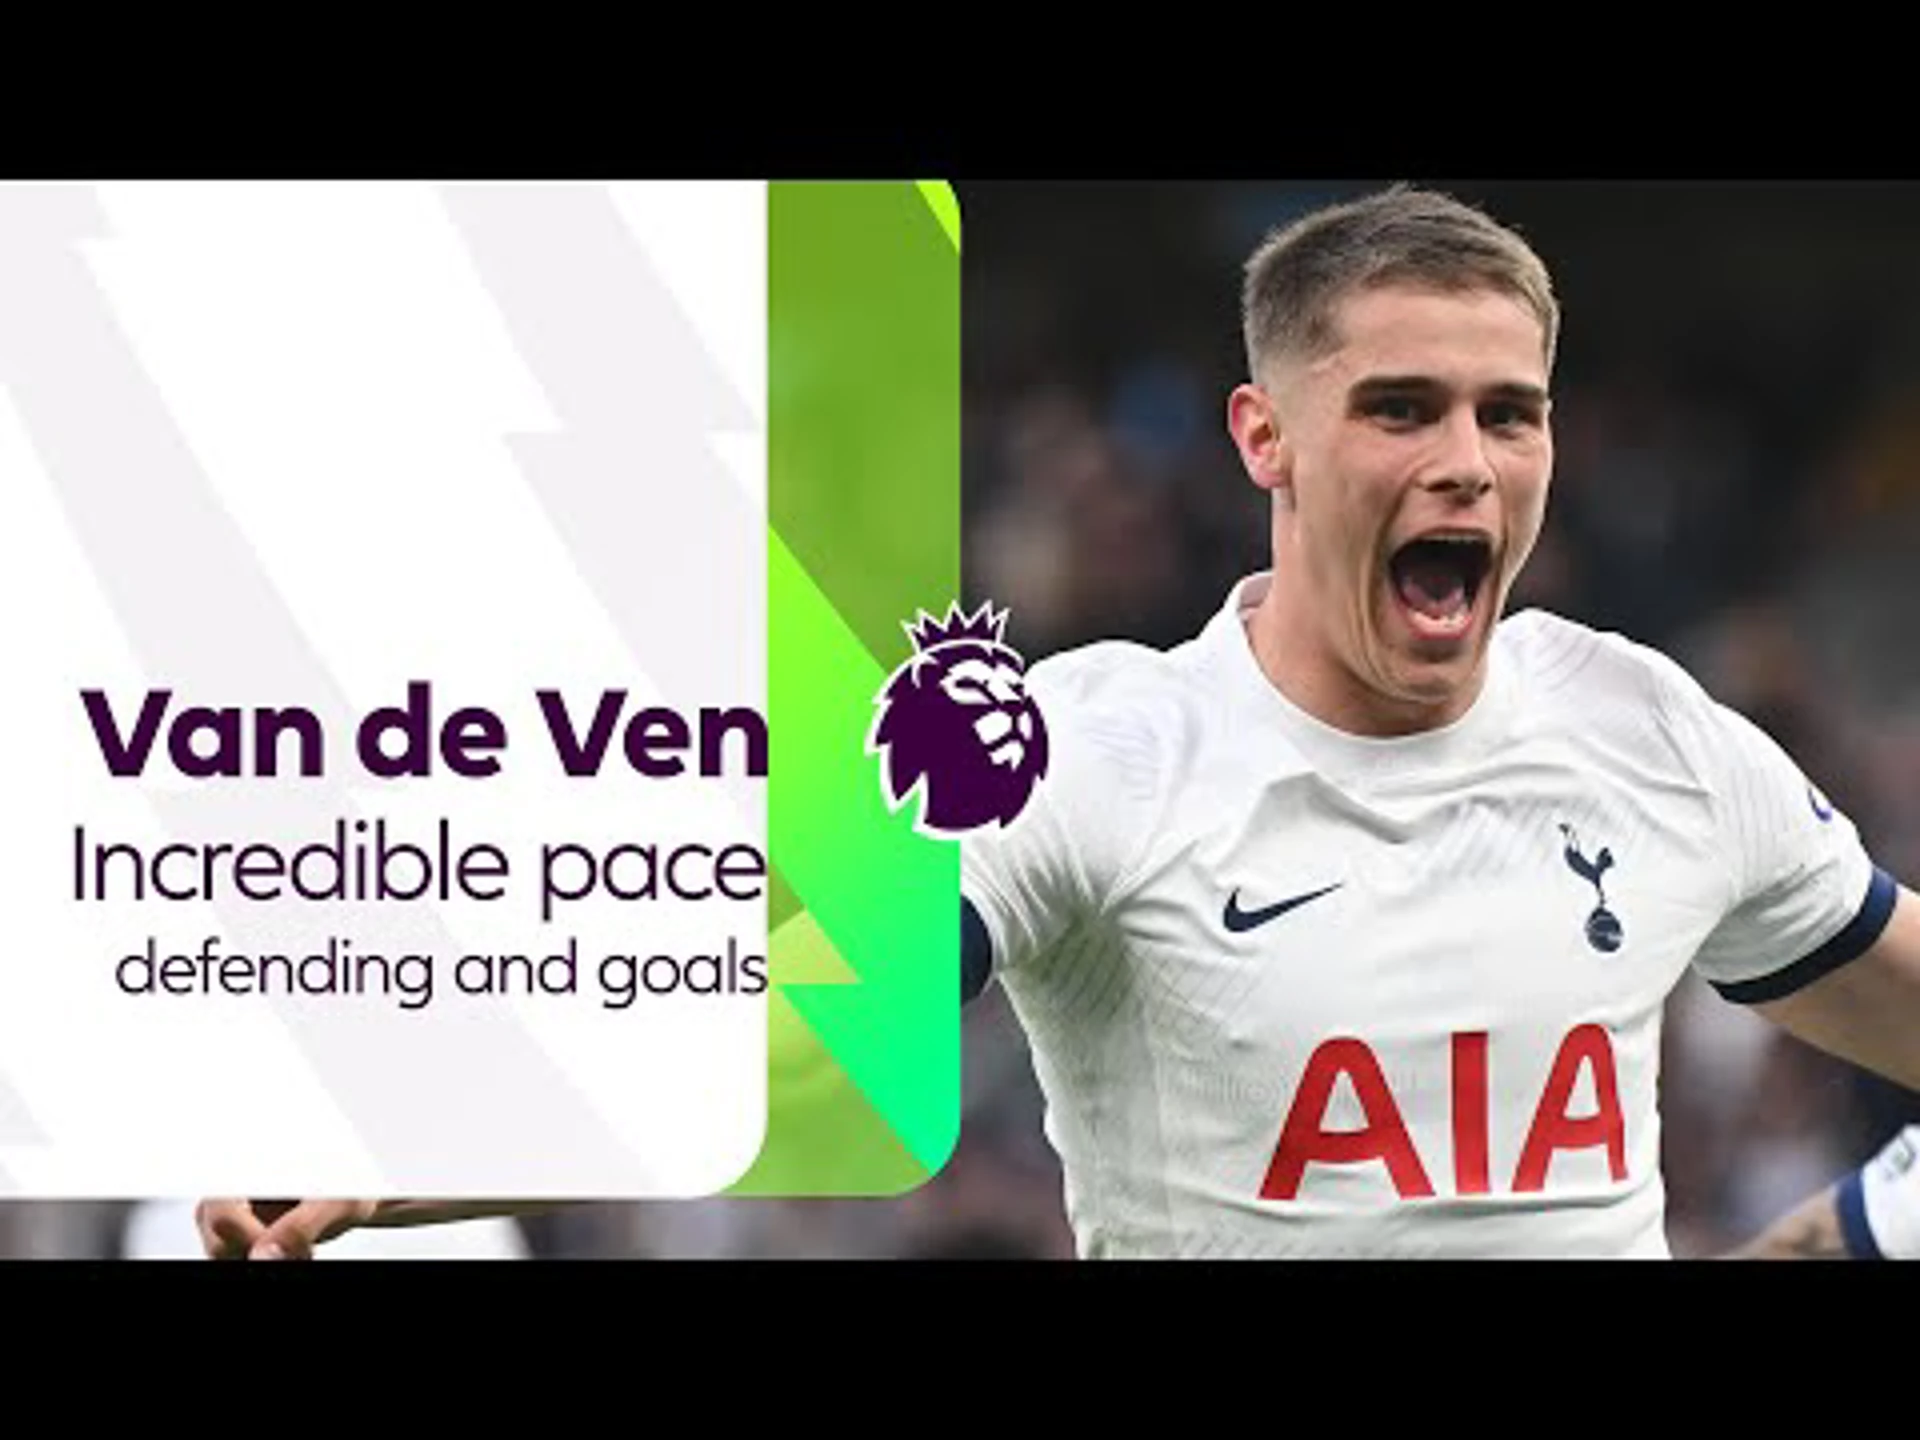 Van de Ven's incredible pace and goals | Premier League